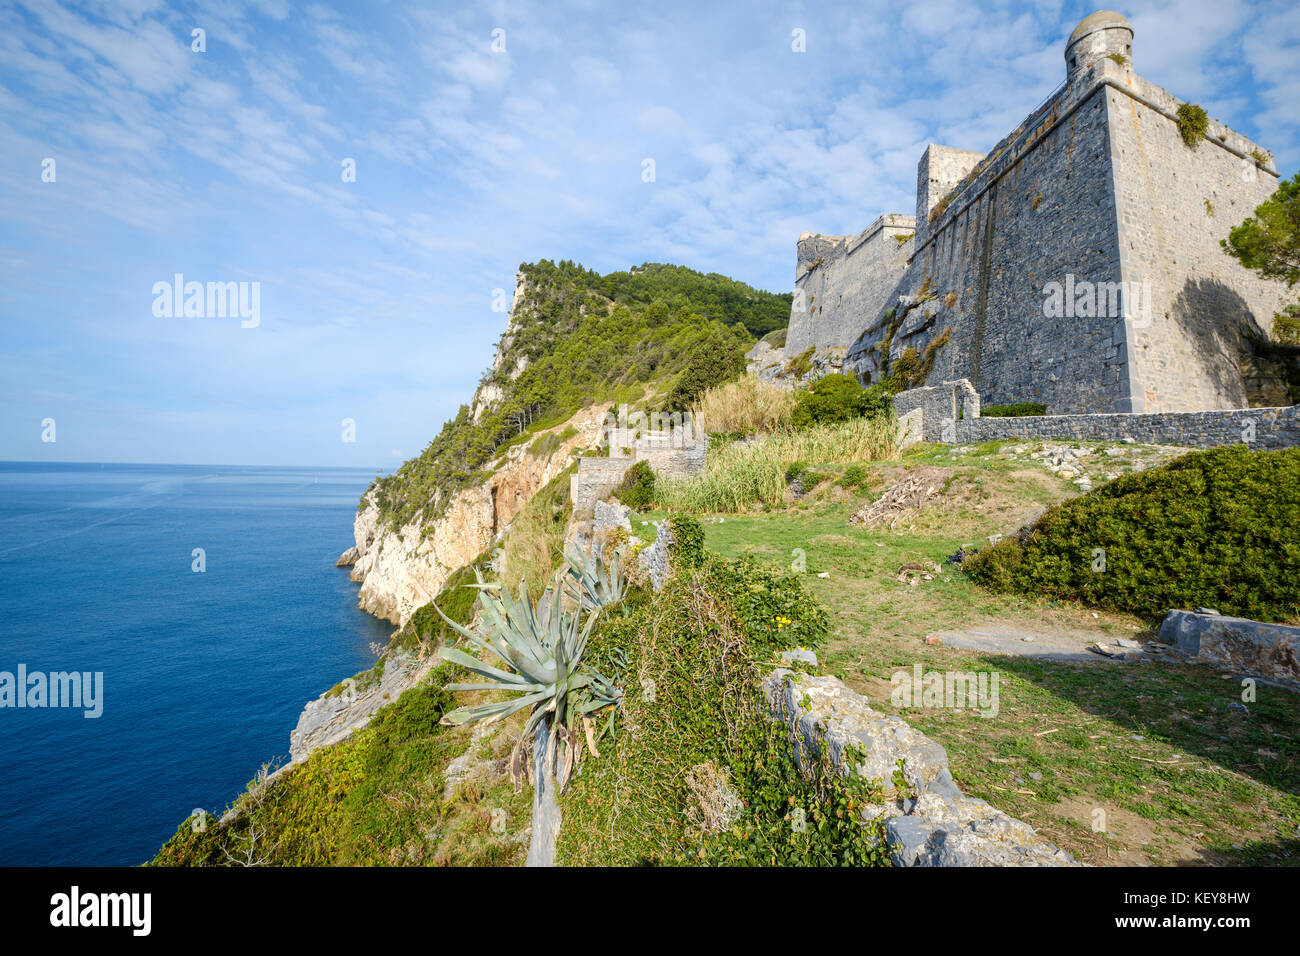 Castle Doria above the coastline at Porto Venere, Liguria, Italy Stock Photo